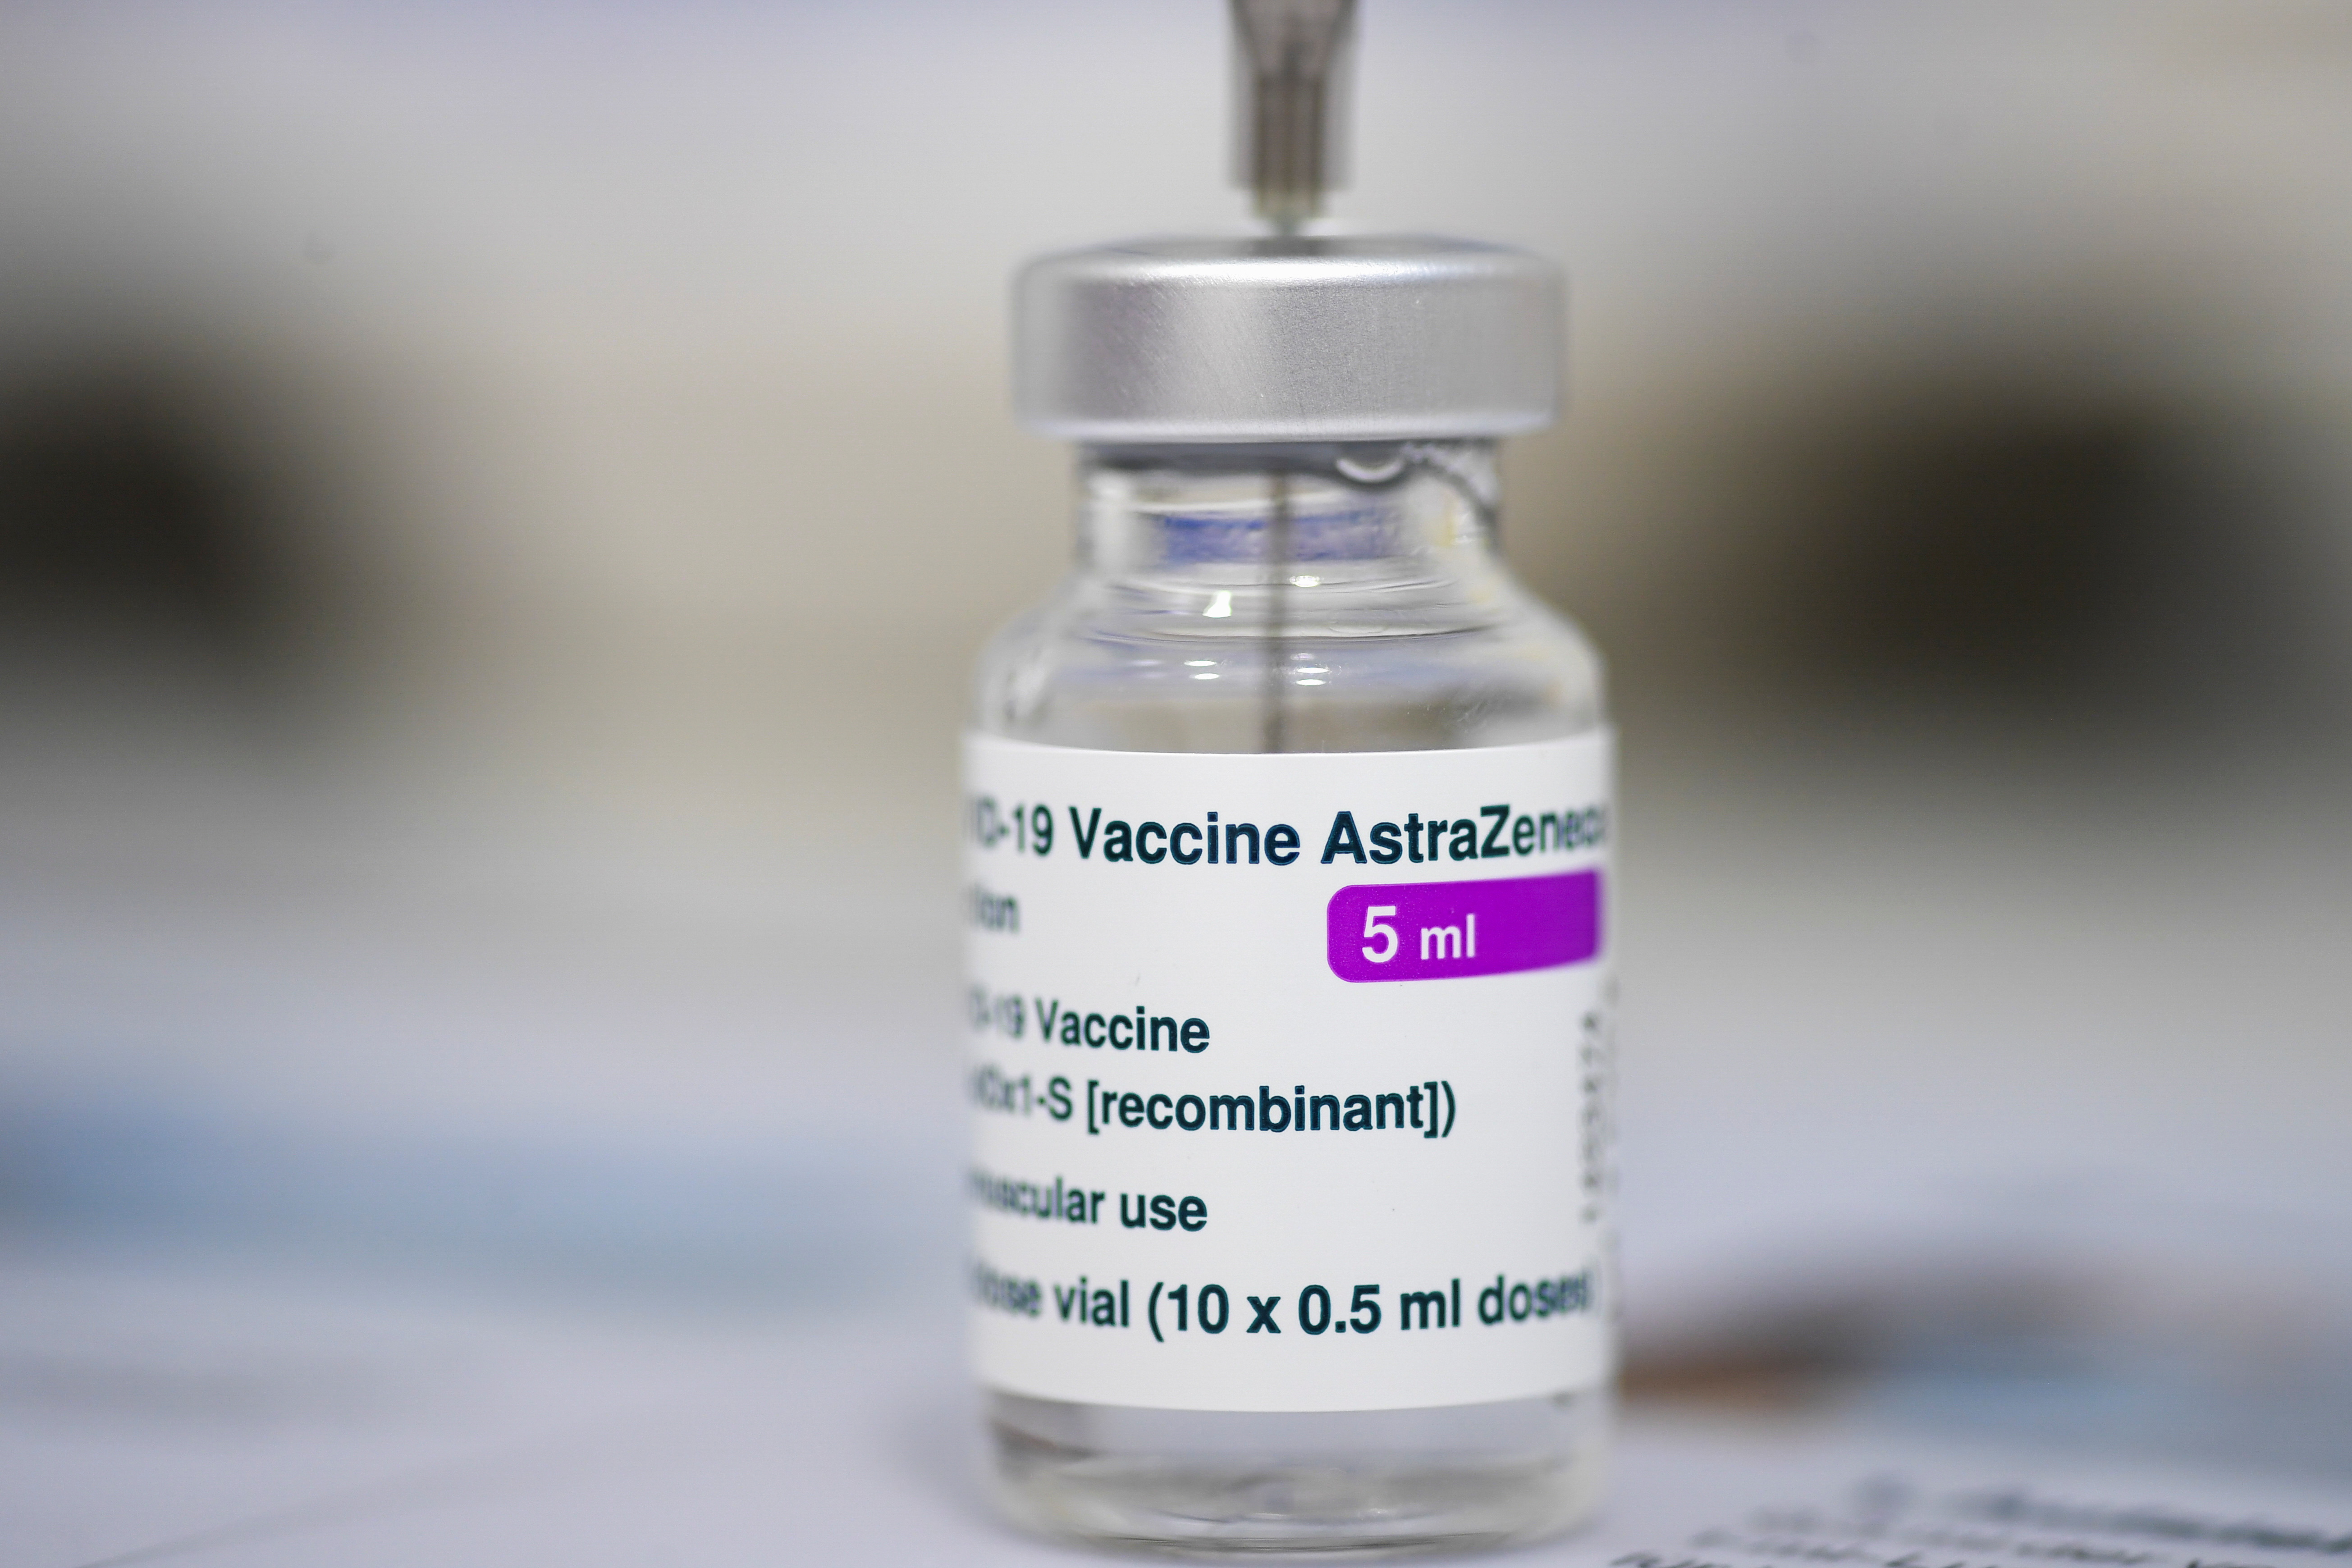 Astrazeneca vaccines